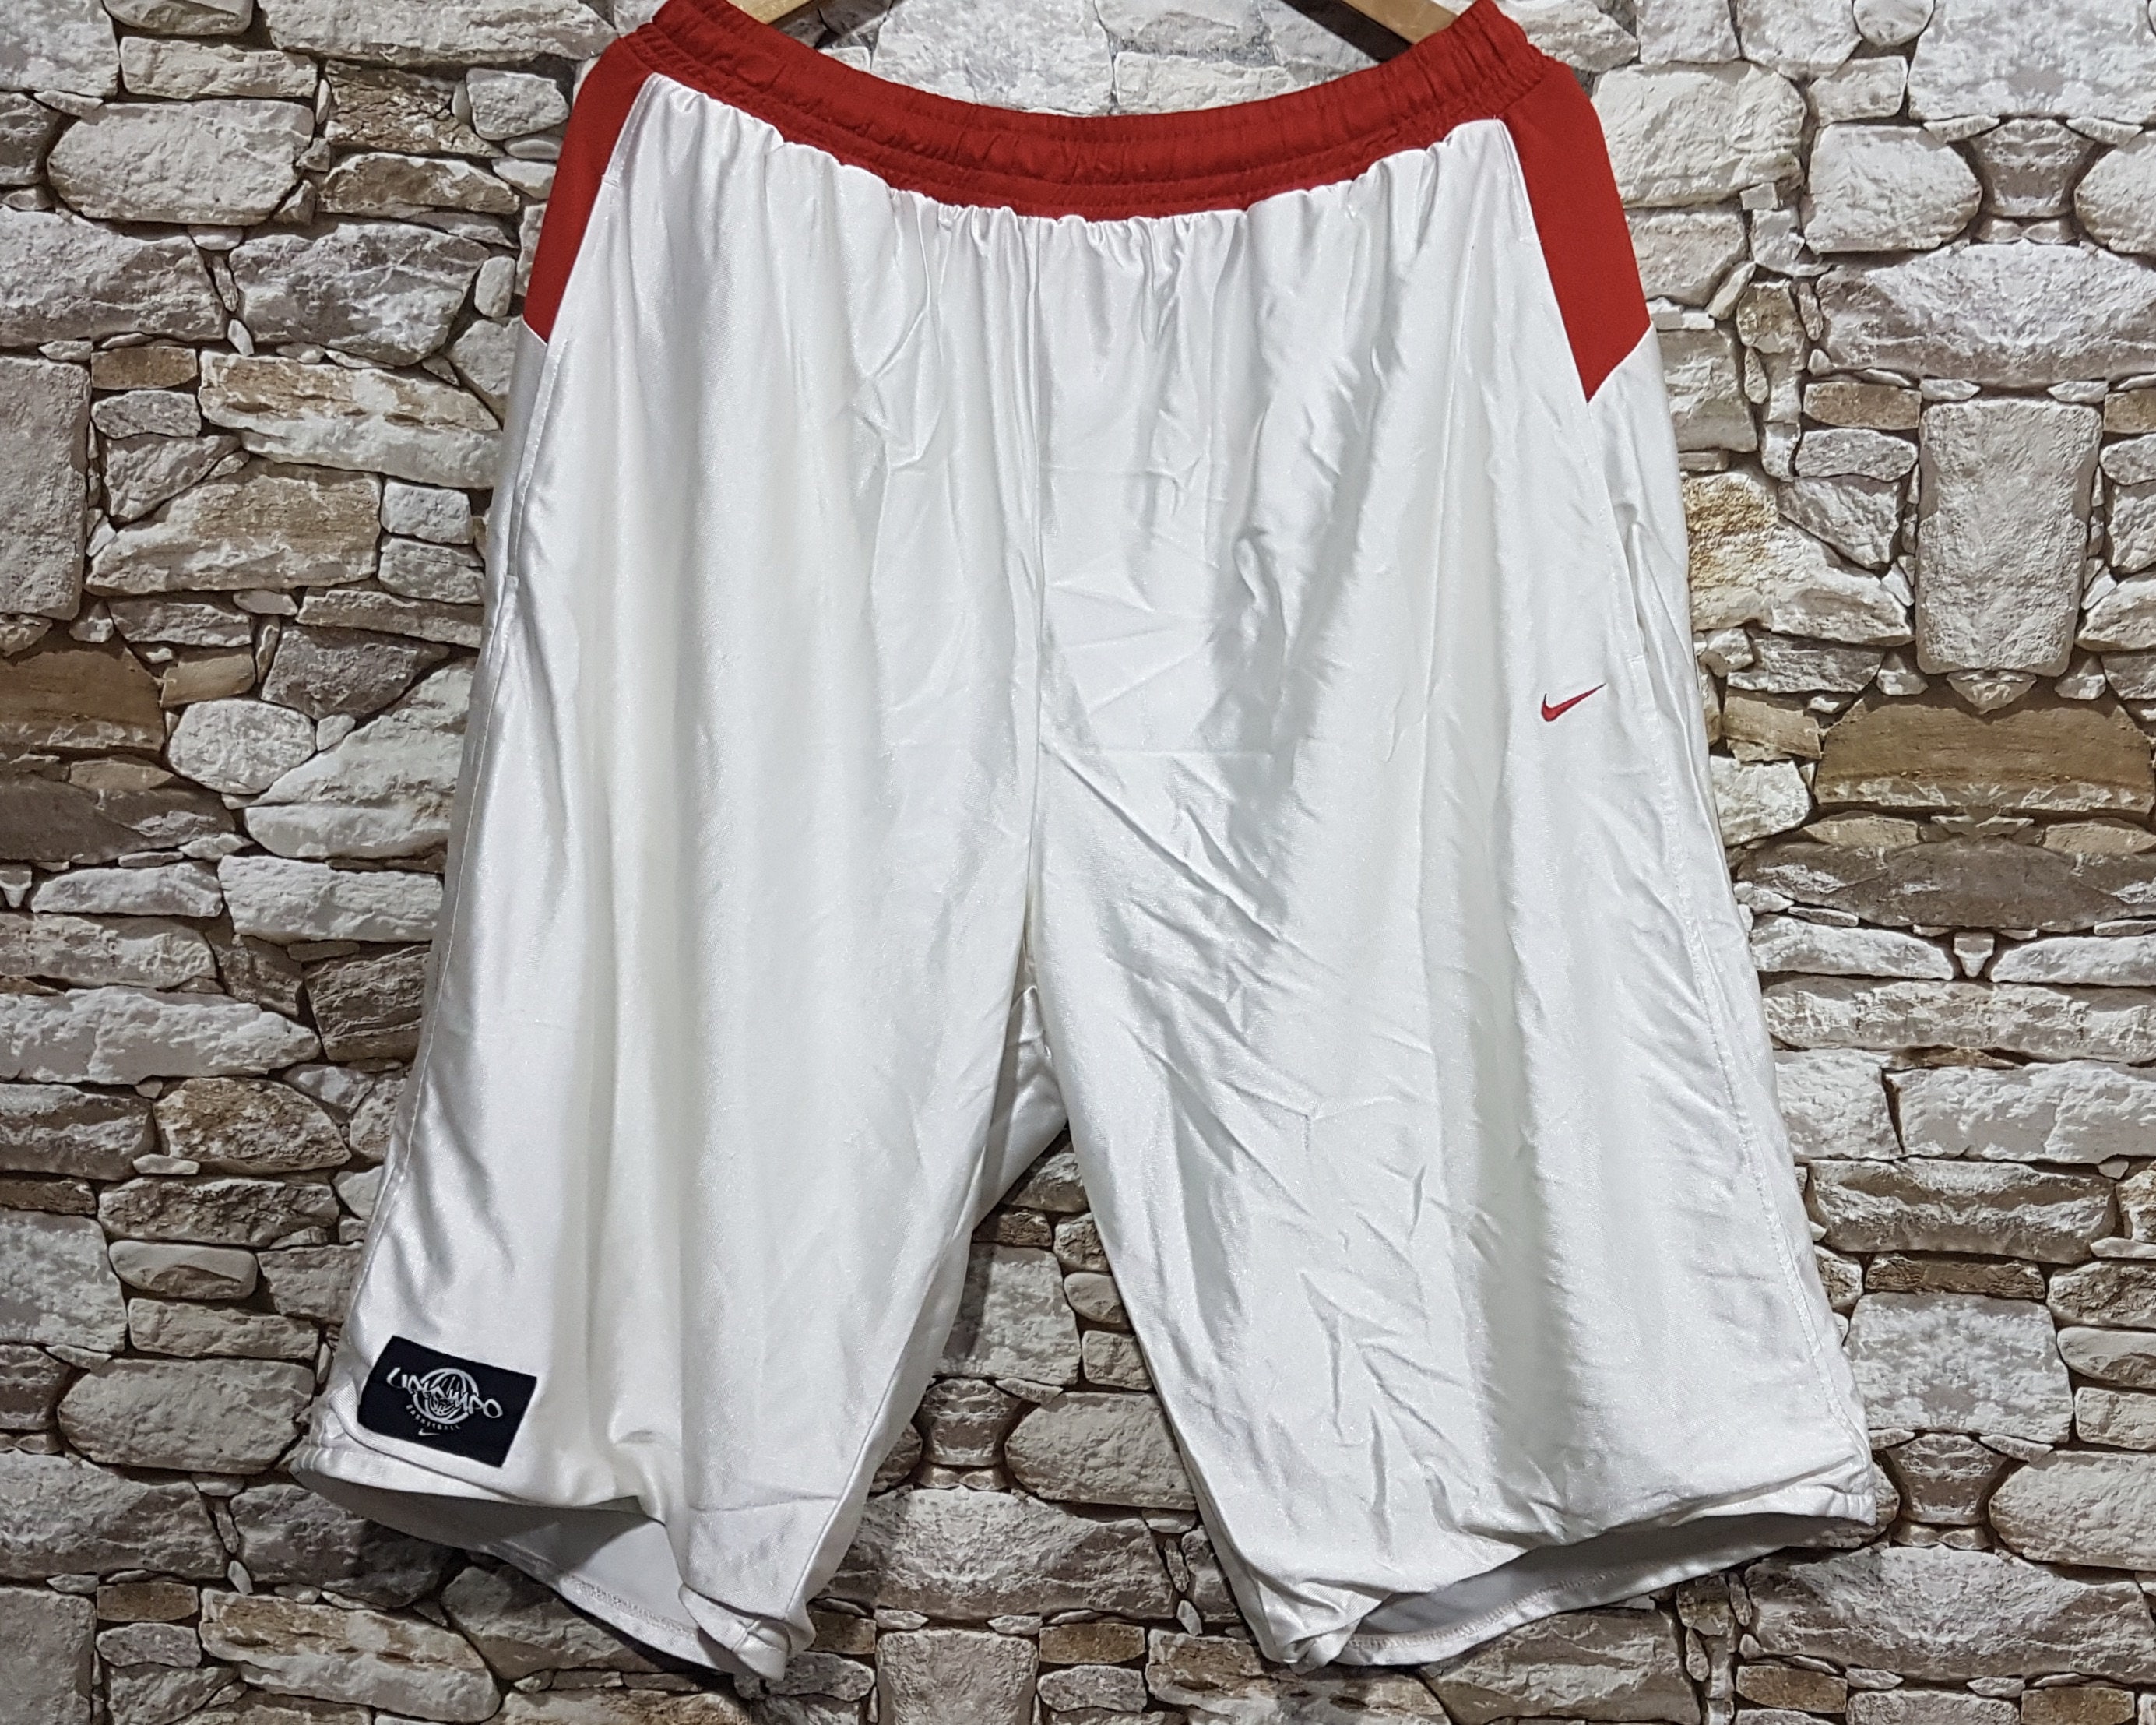 Nike jordan shorts - Etsy